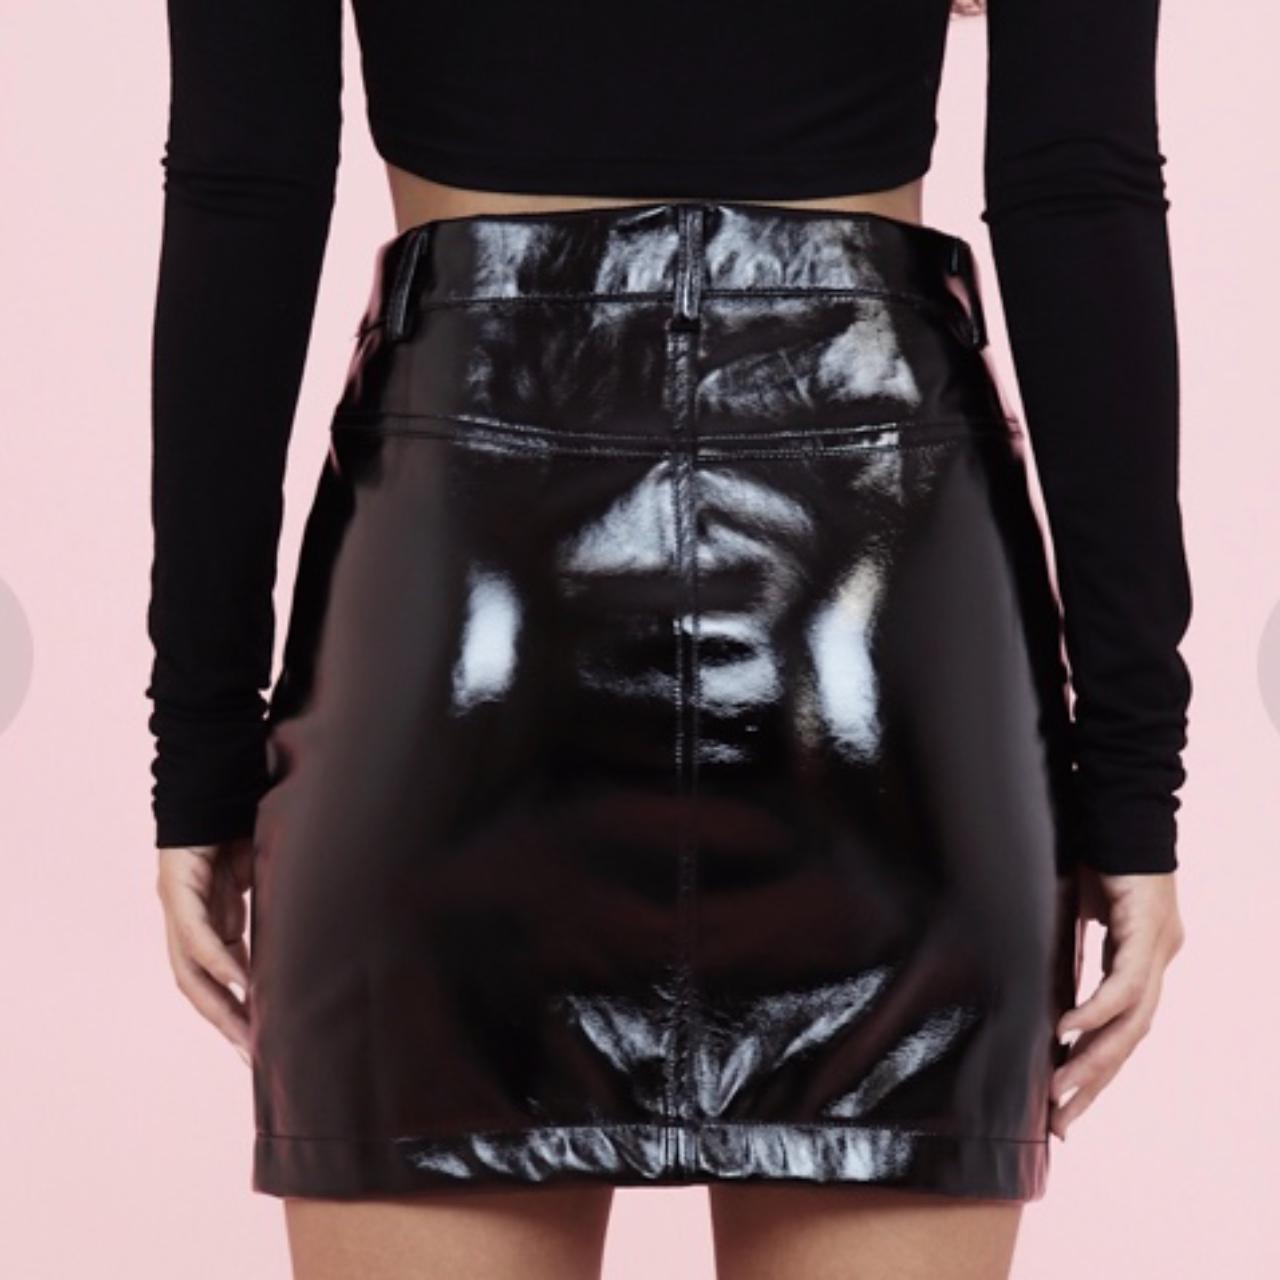 Product Image 2 - Cry Baby Katherine skirt, vinyl-like,